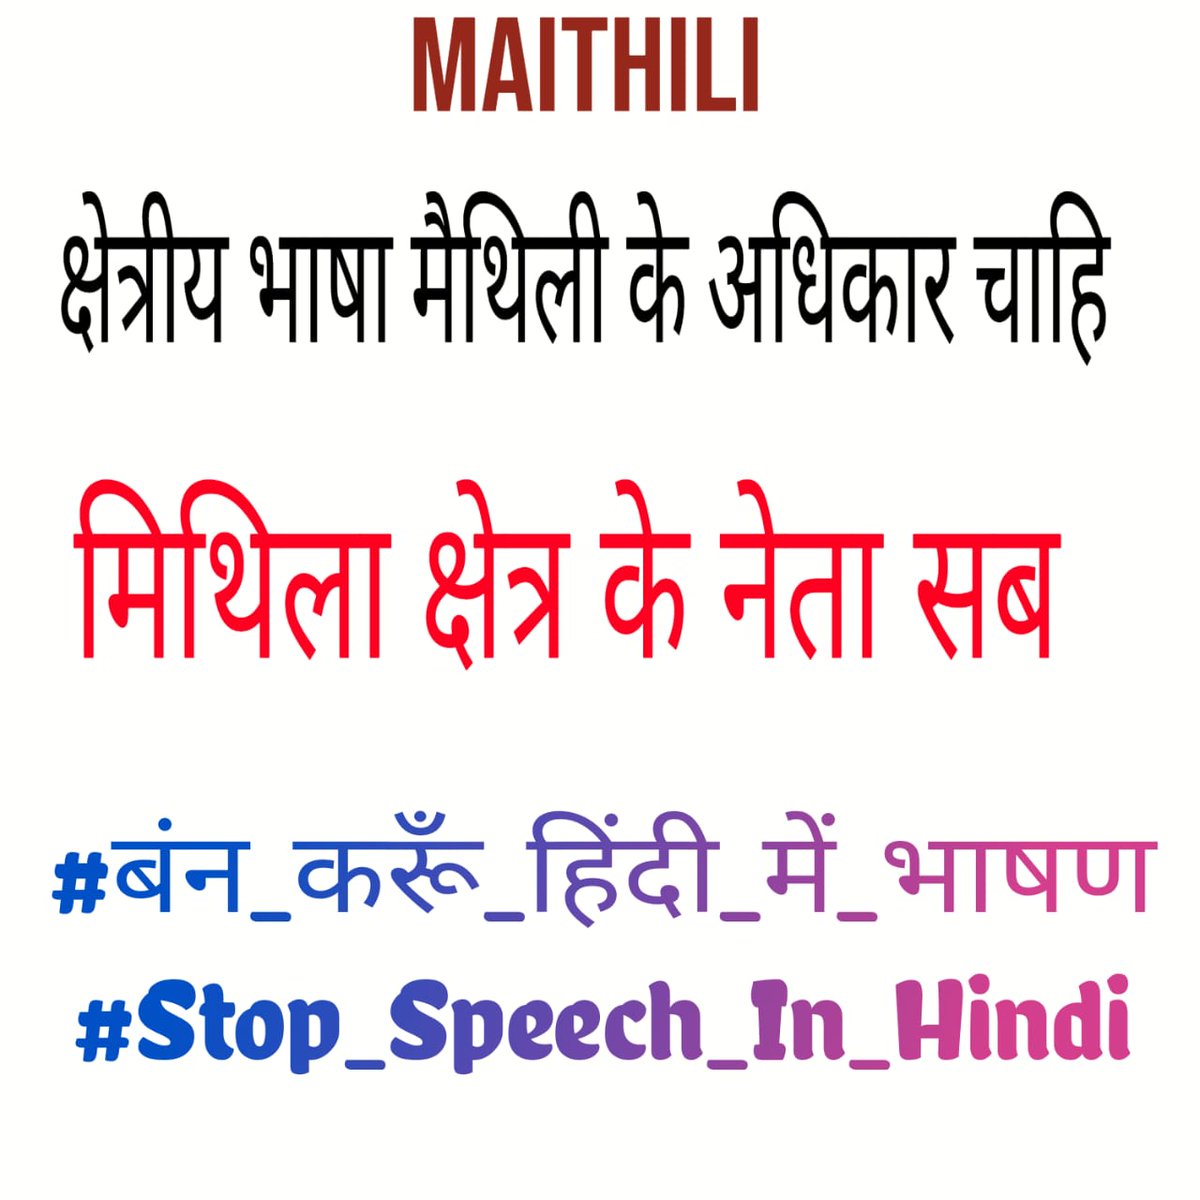 #बंन_करूँ_हिंदी_में_भाषण
#Stop_Speech_In_Hindi
#बंन_करूँ_हिंदी_में_भाषण
#Stop_Speech_In_Hindi